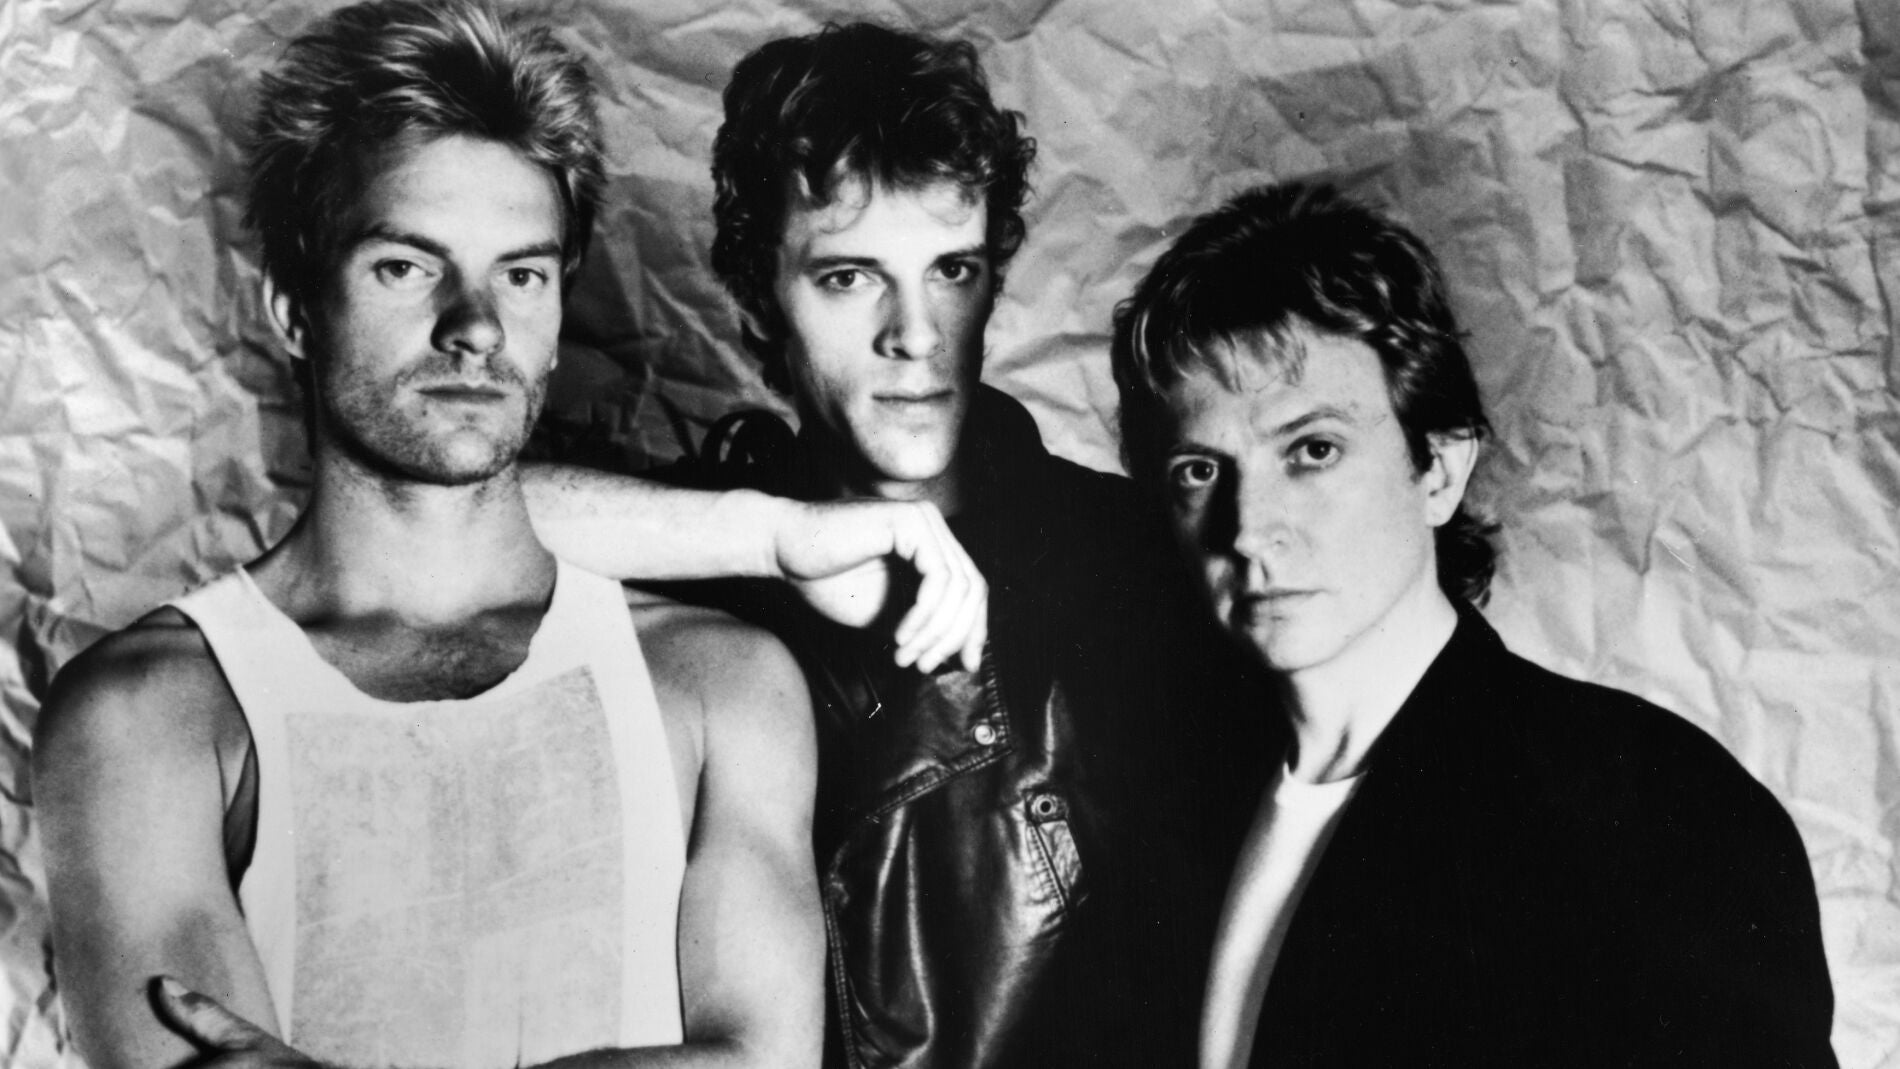 La banda The Police, liderada por Sting, en 1983.